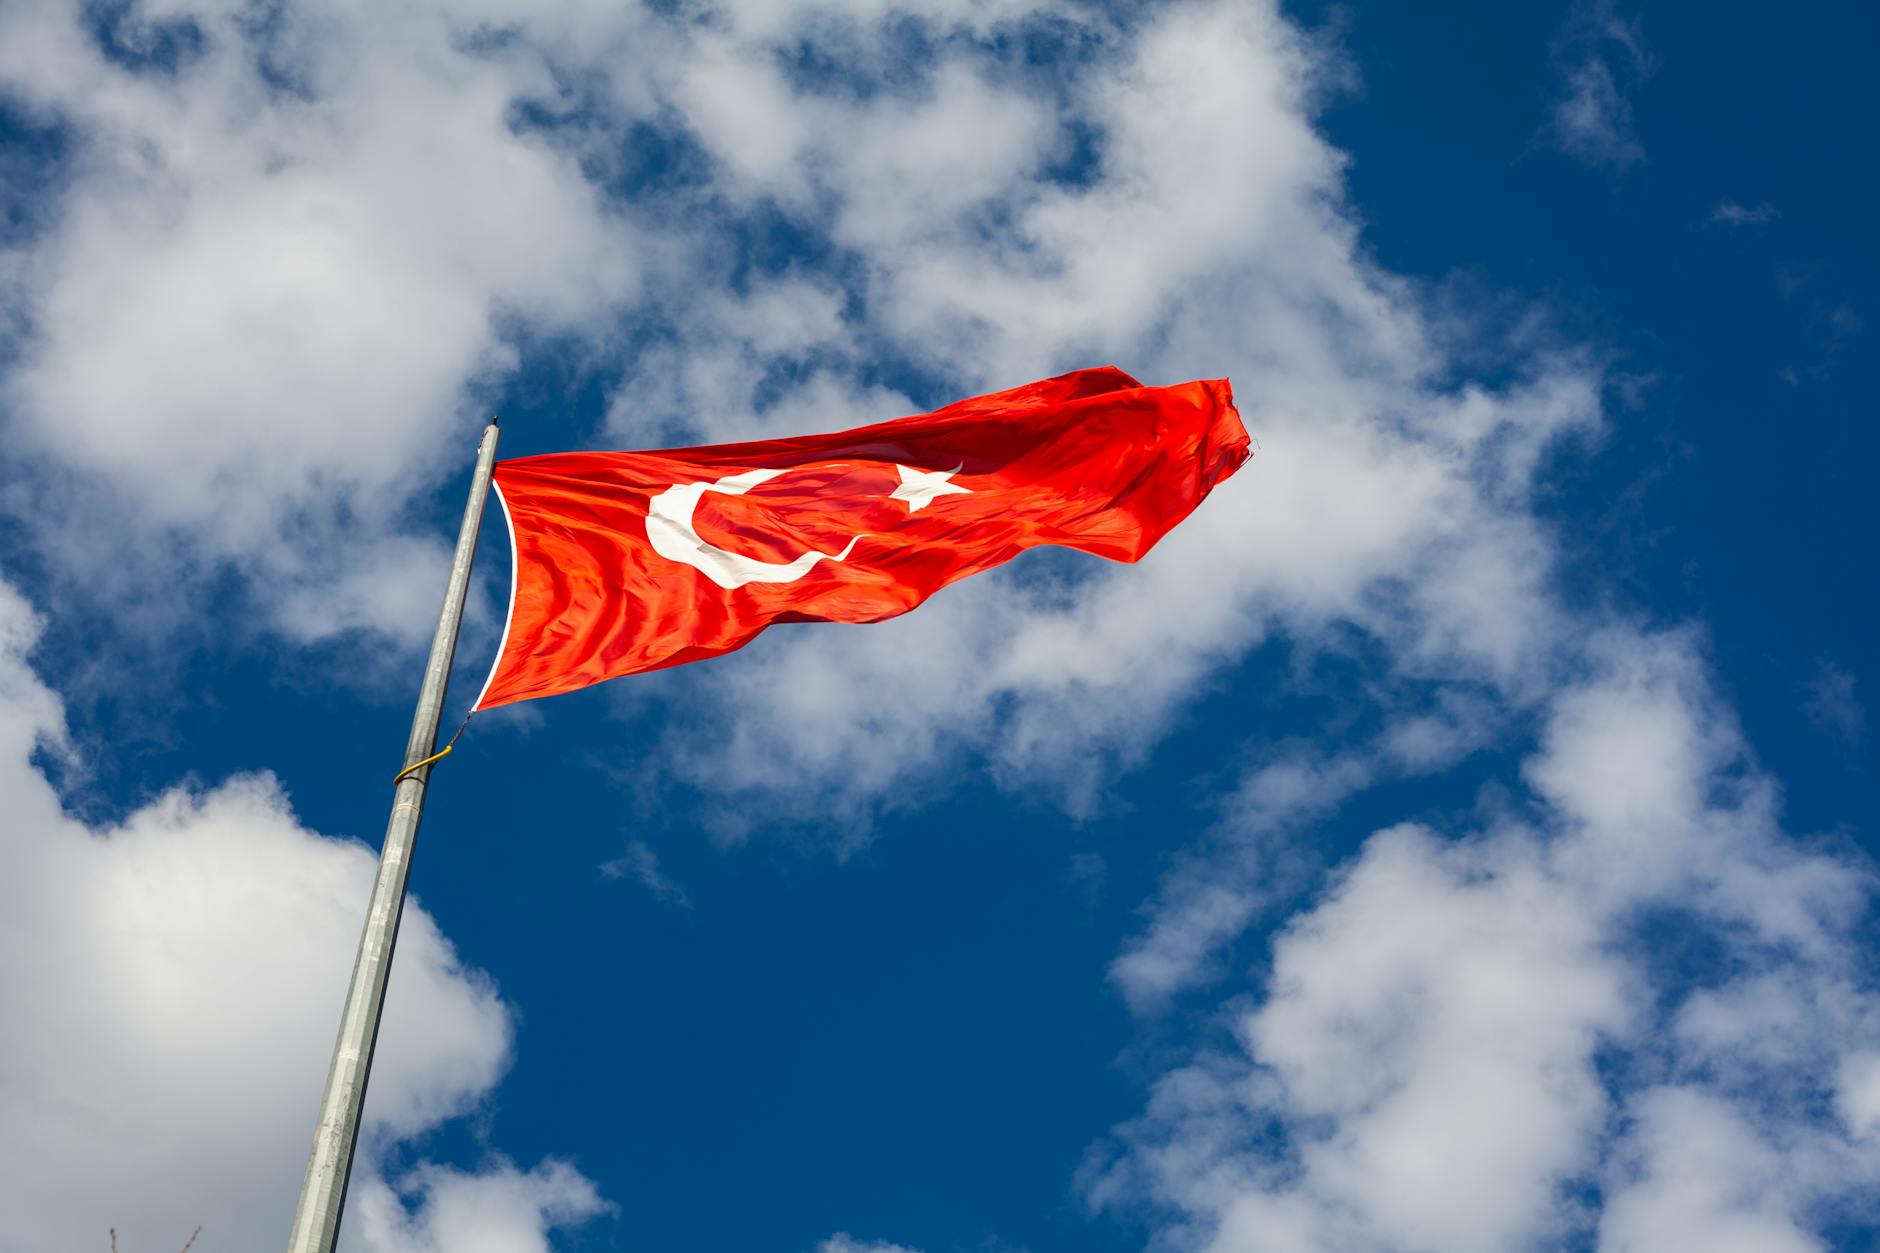 φωτογραφία χαμηλής γωνίας της σημαίας της Τουρκίας